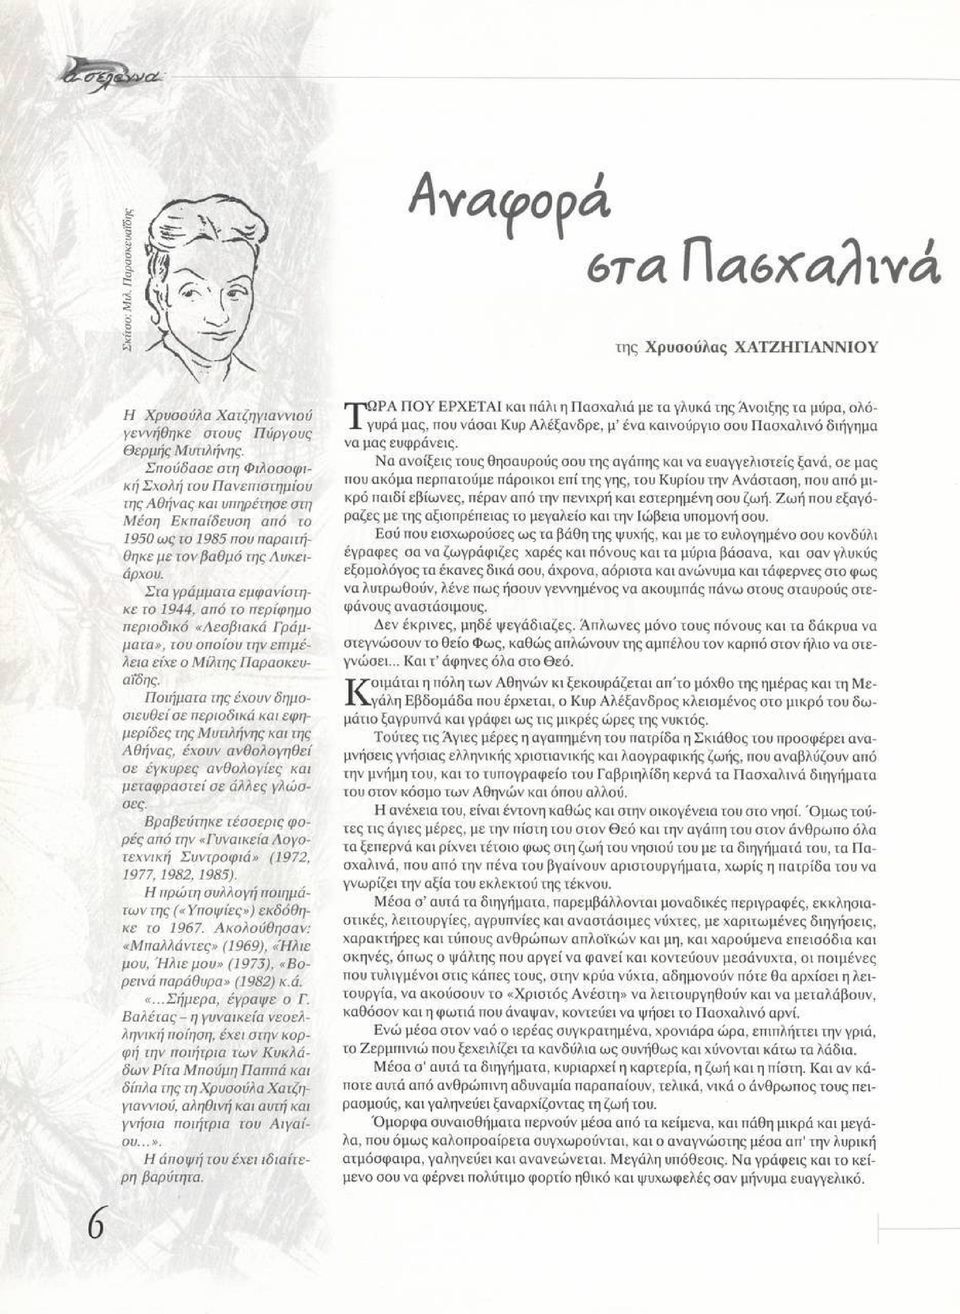 Στα γράμματα εμφανίστηκε το 1944, από το περίφημο περιοδικό «Λεσβιακά Γράμματα», του οποίου την επιμέλεια είχε ο Μίλτης Παραοκευαΐδης.